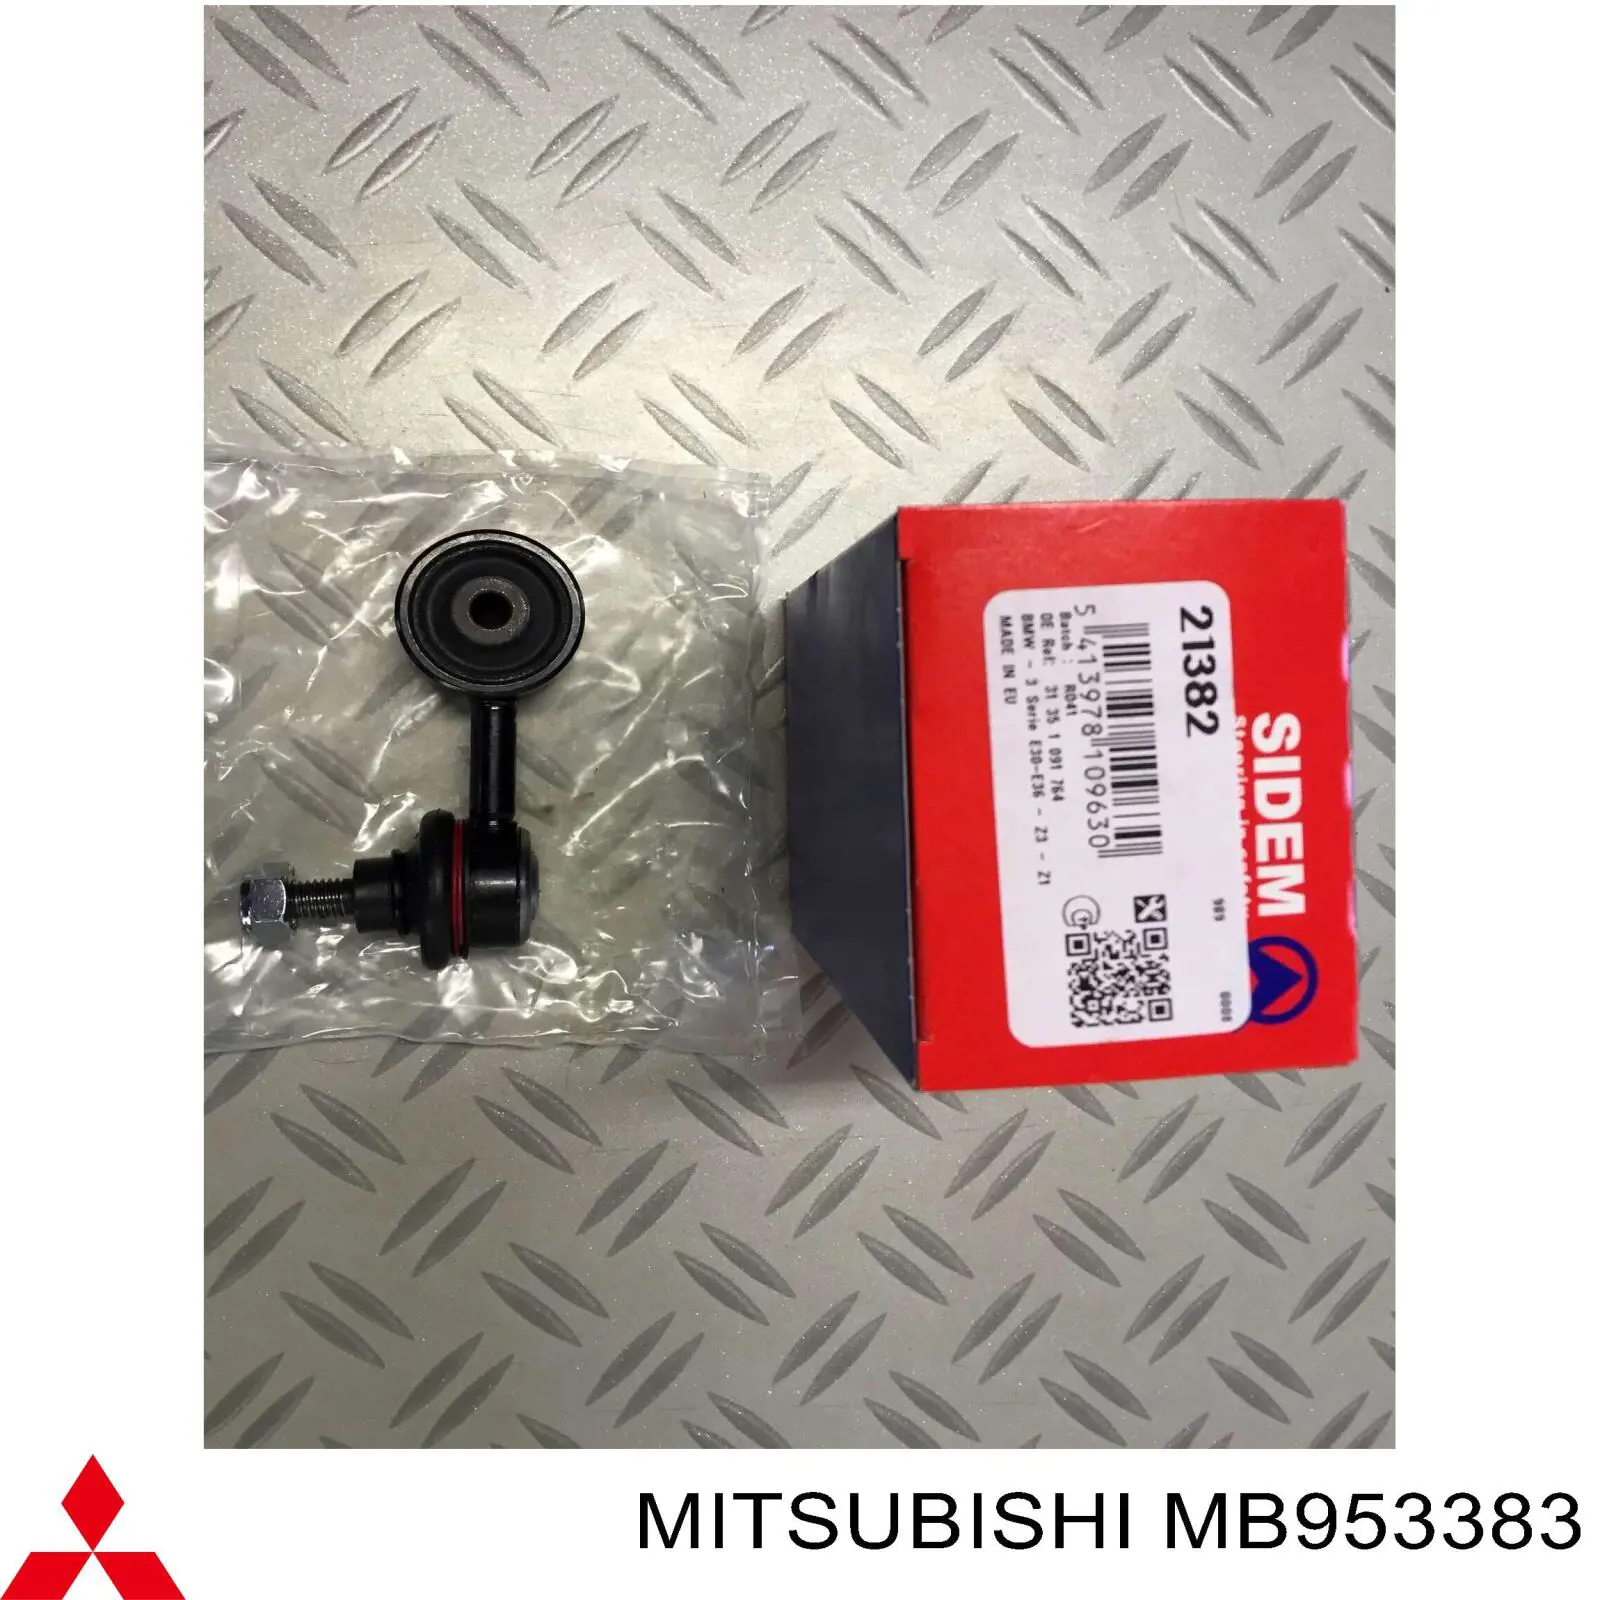 MB953383 Mitsubishi relé, piloto intermitente